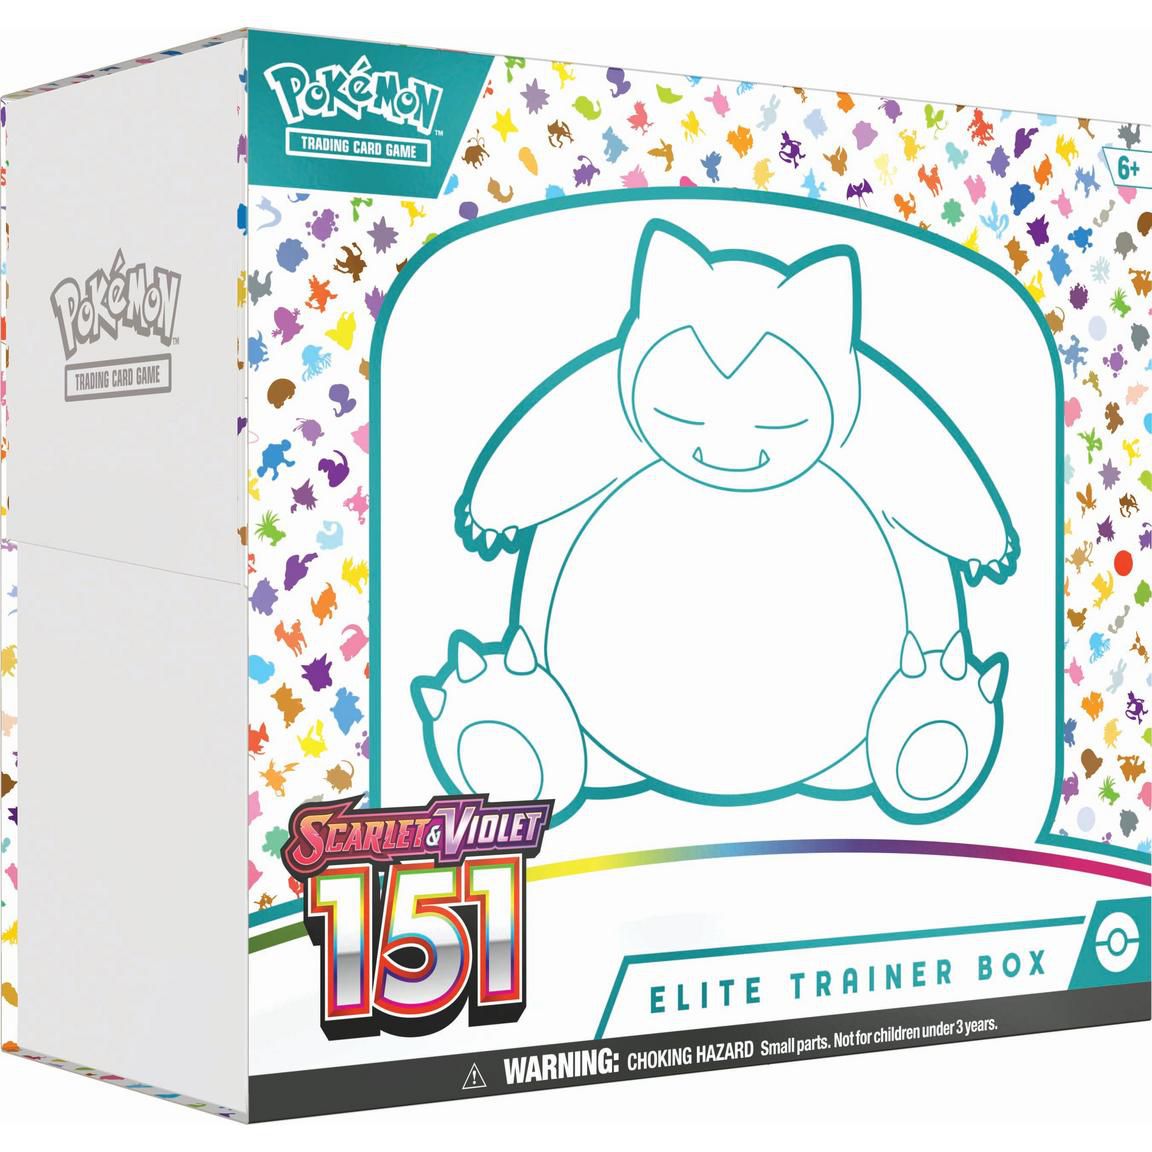 Elittrainerboxen för Pokémon Scarlet och Violet: 151 Collection TCG, som har en Snorlax på förpackningen.